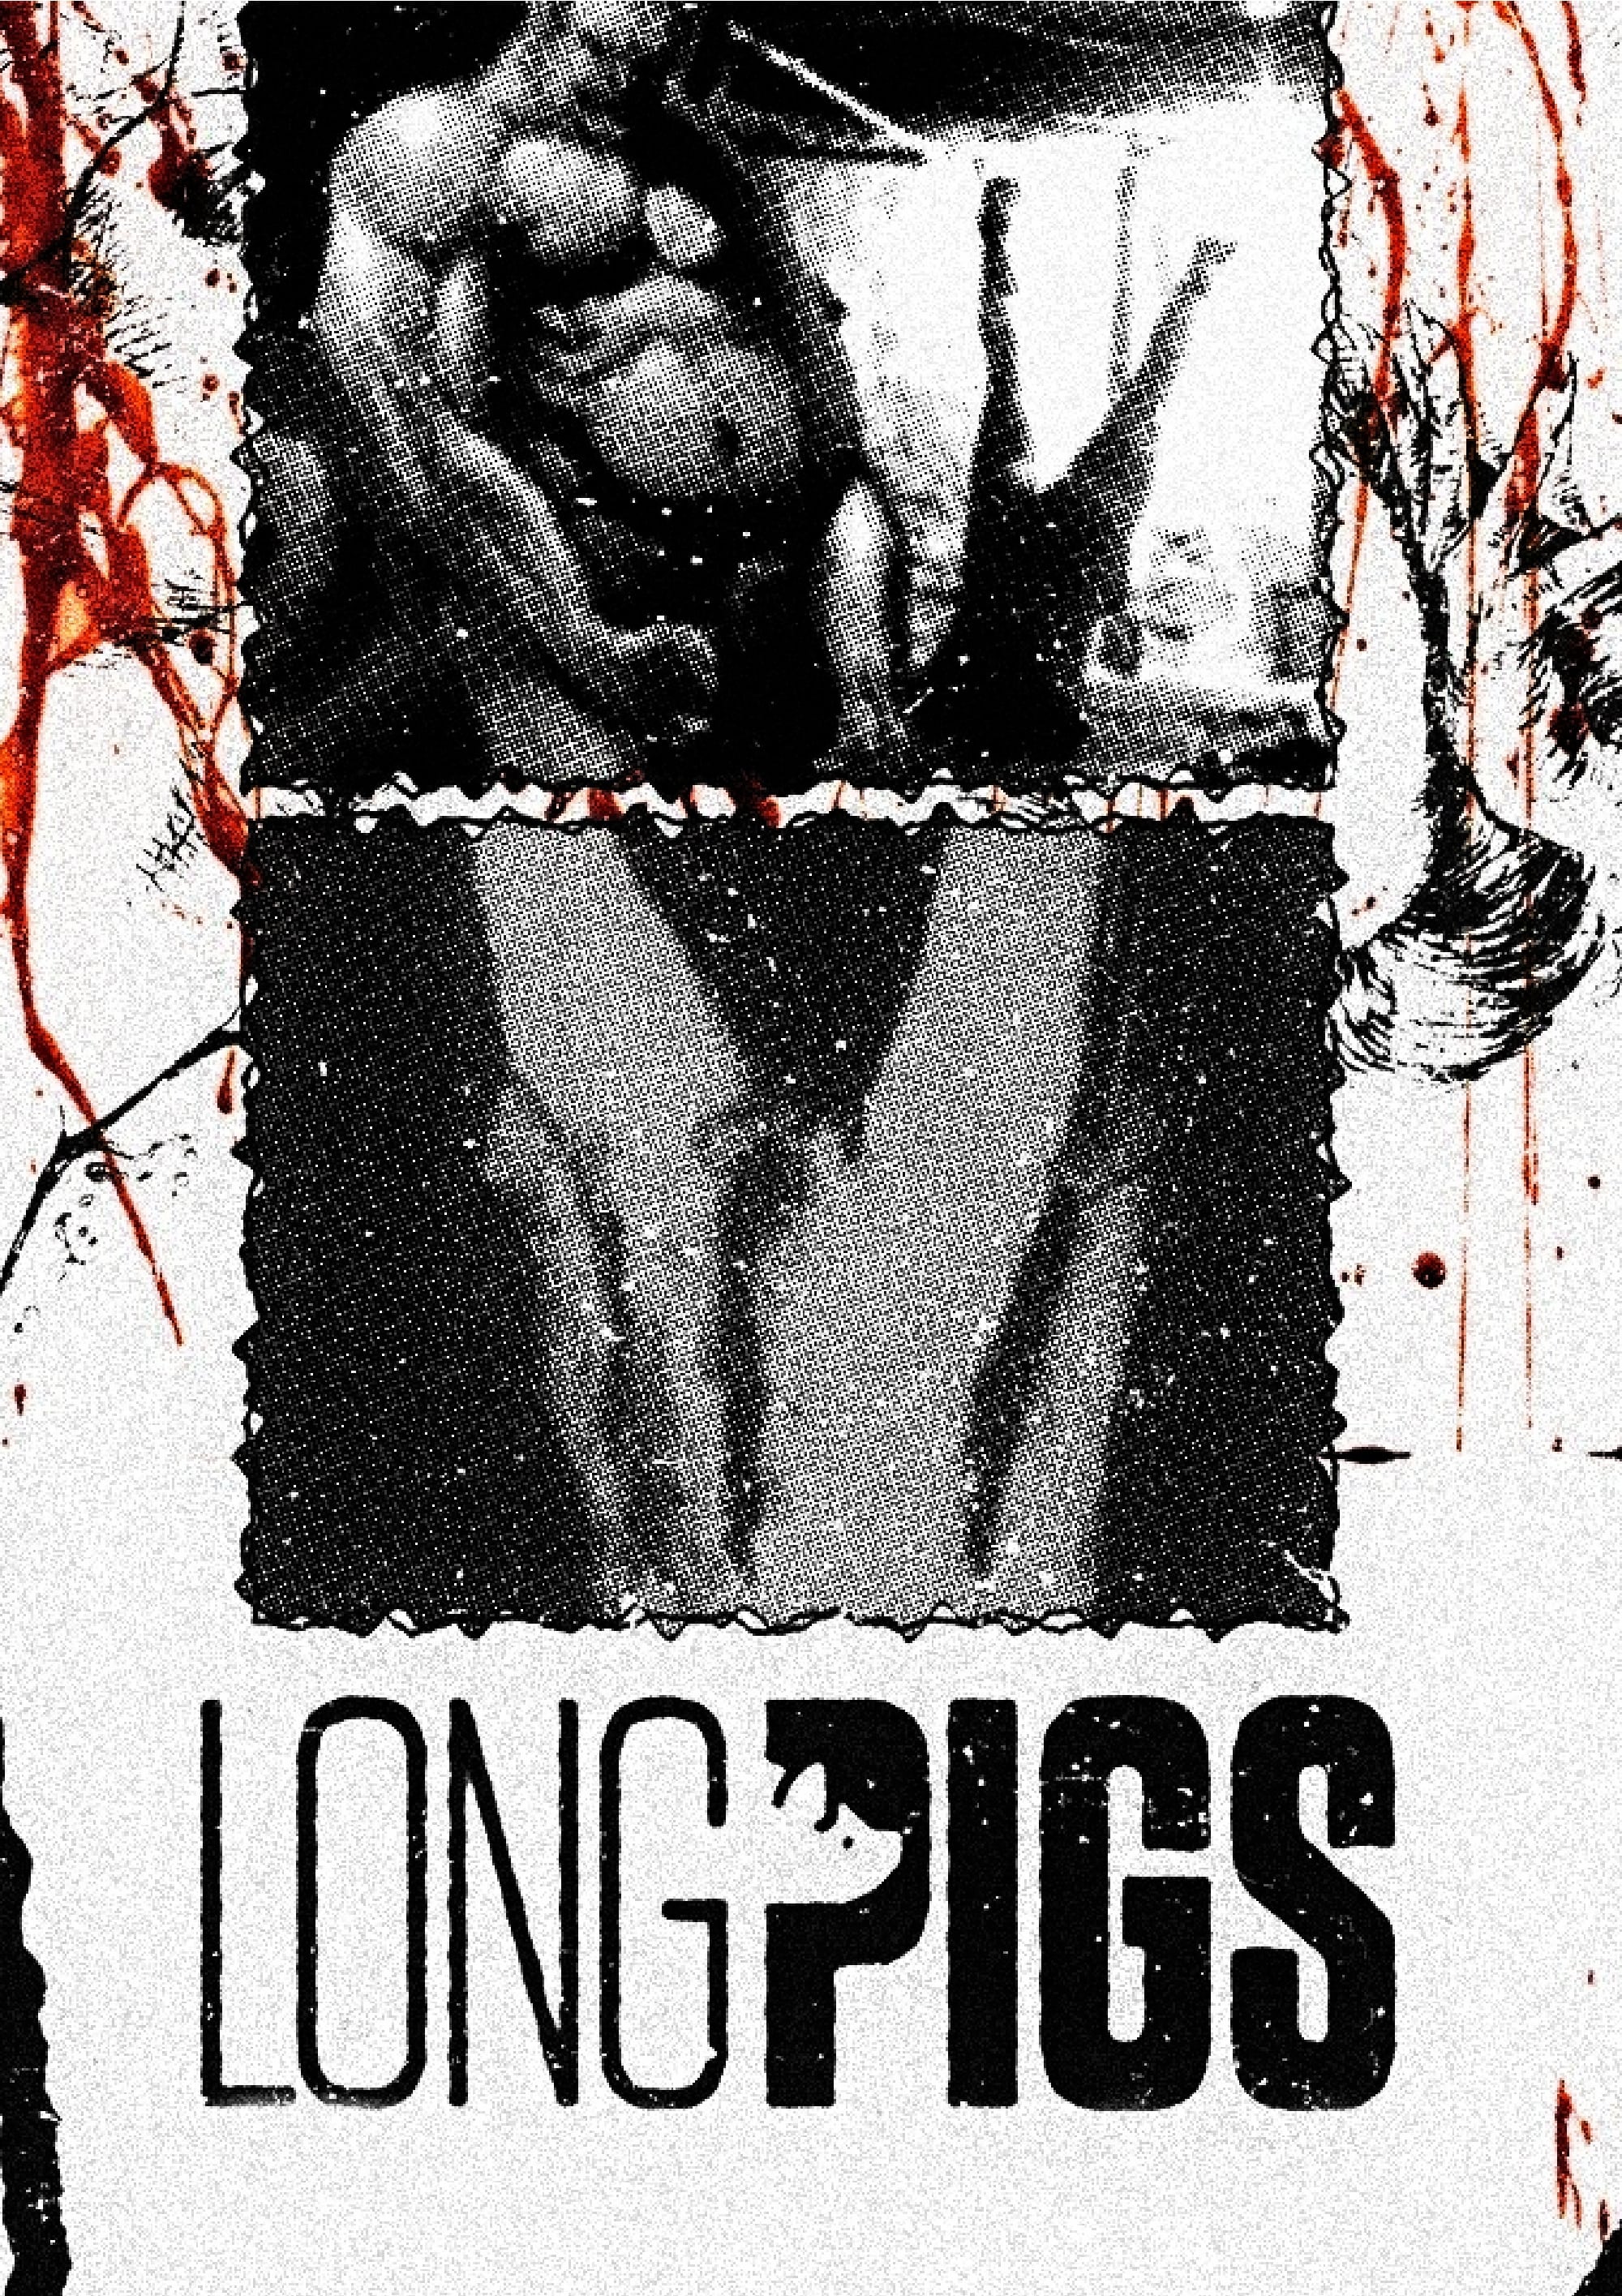 Long Pigs (2010)